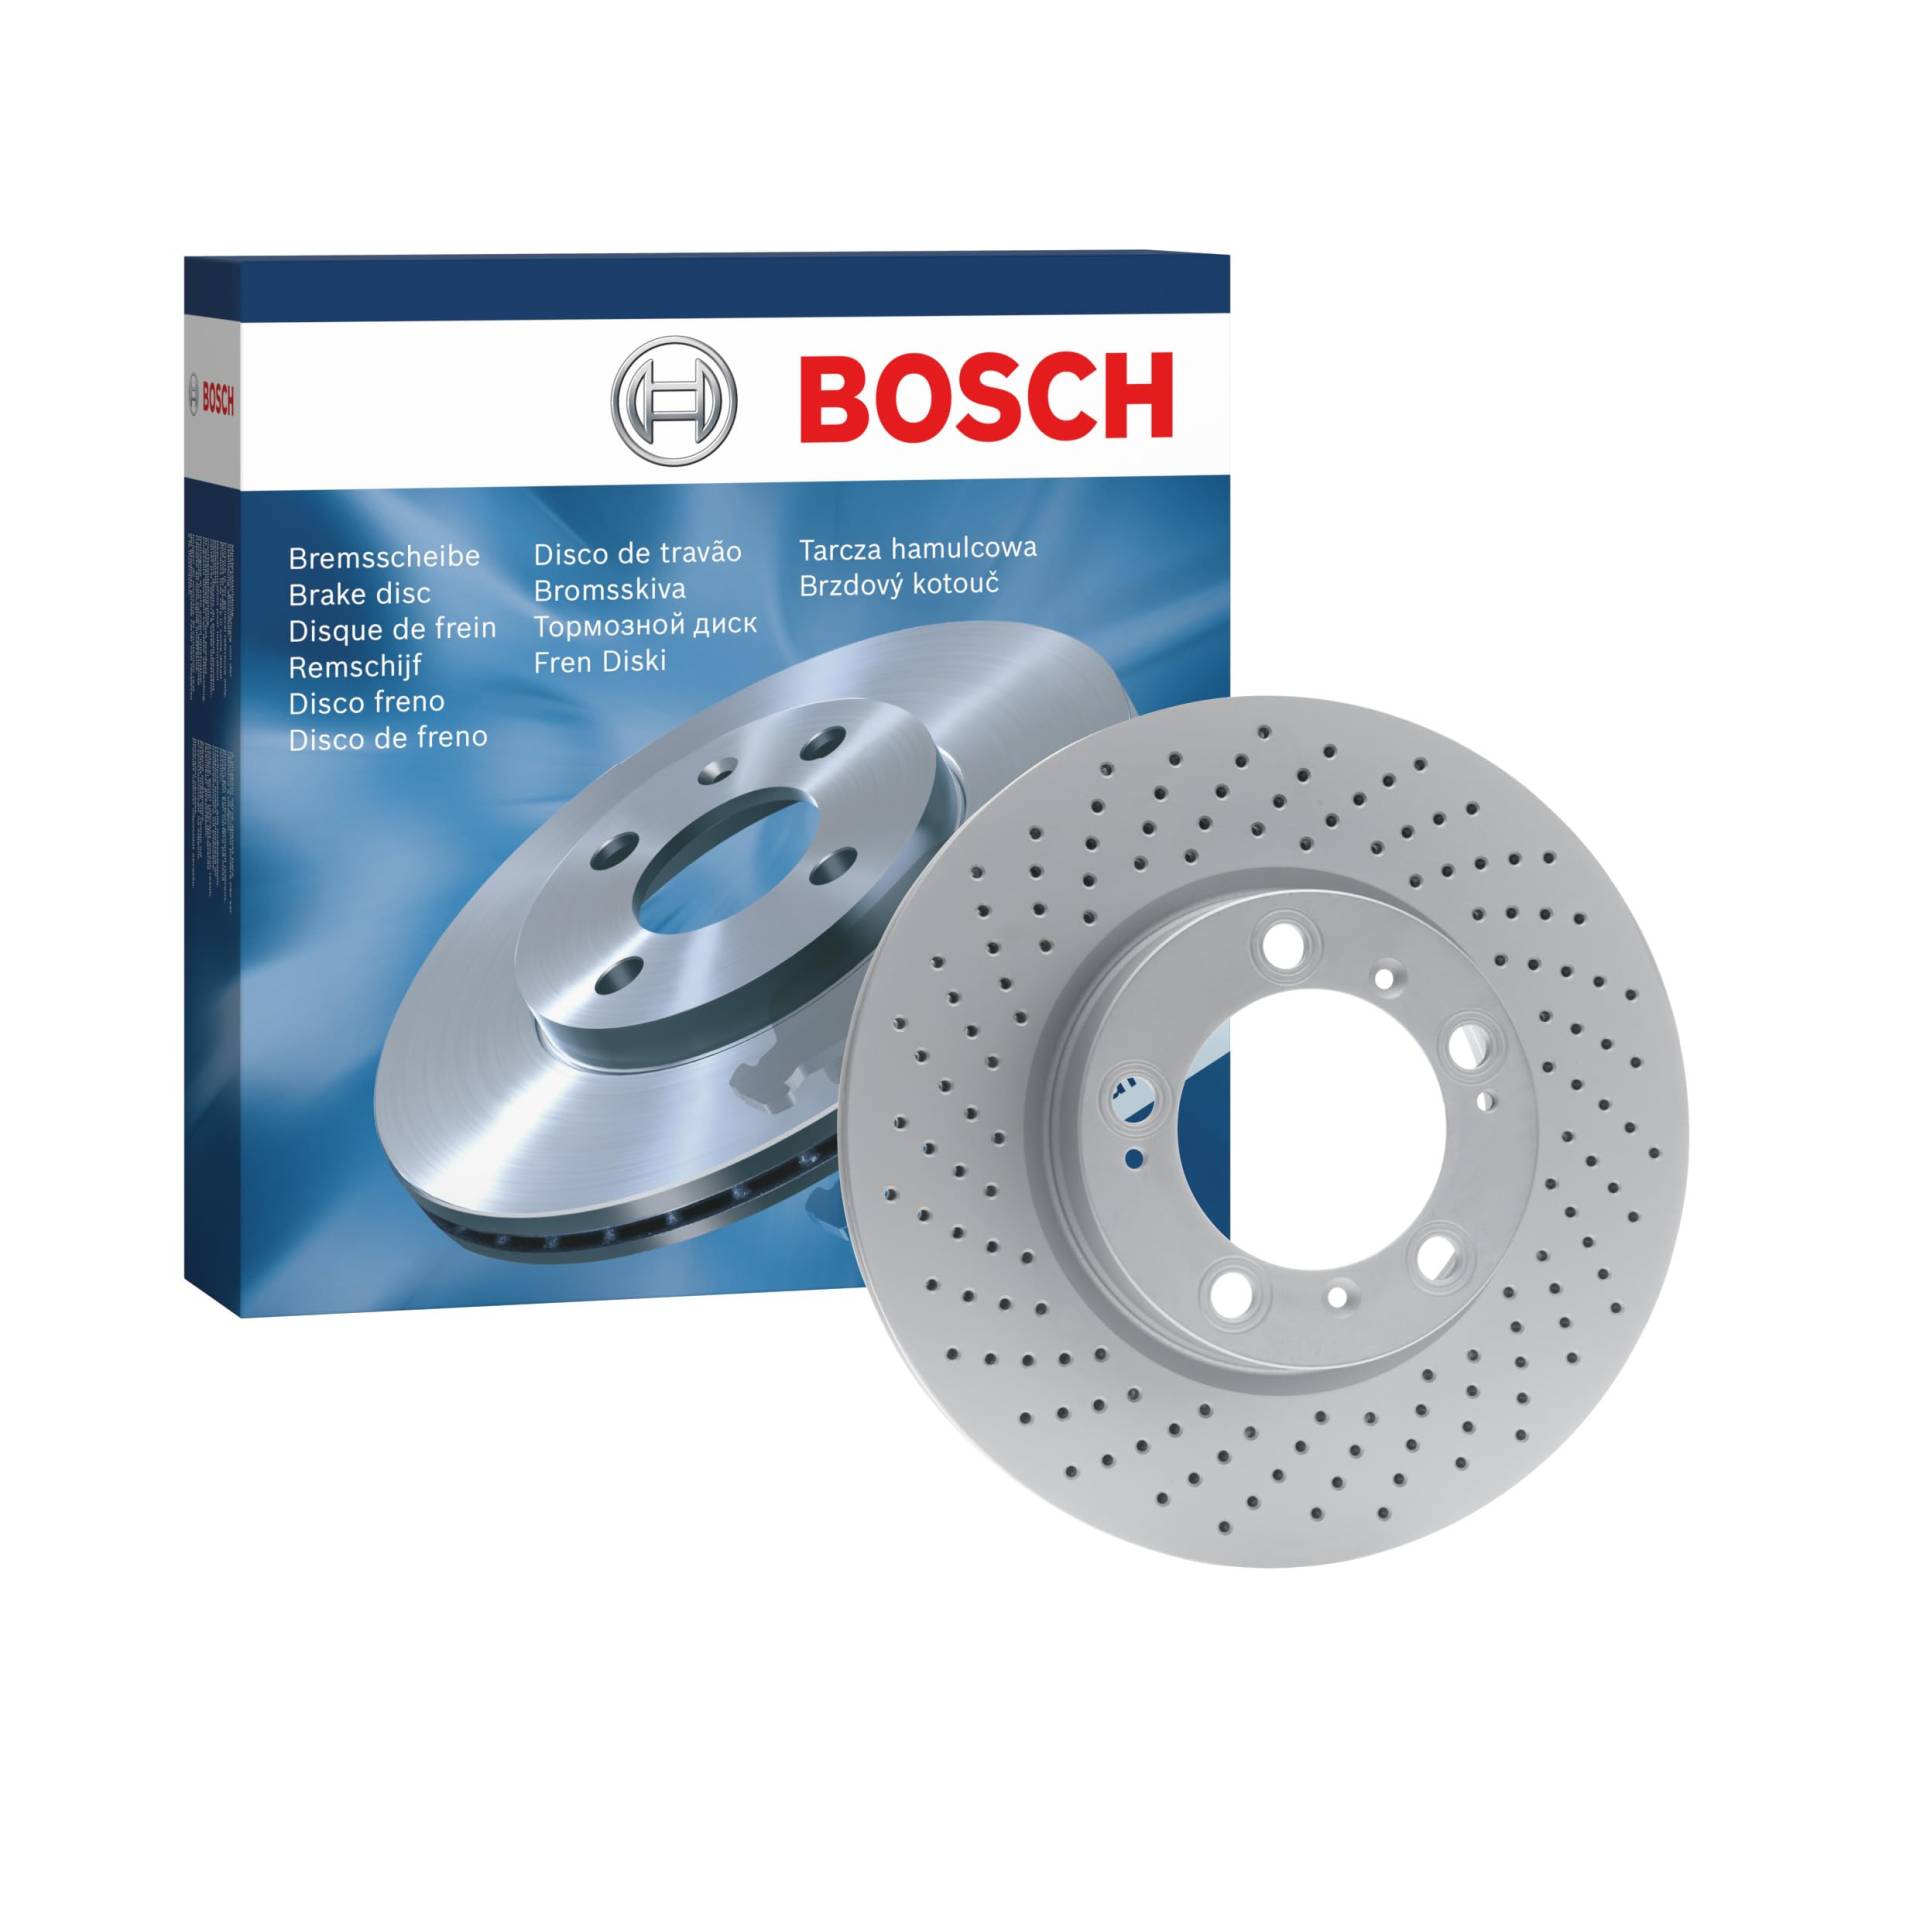 Bosch BD1393 Bremsscheiben - Vorderachse - ECE-R90 Zertifizierung - eine Bremsscheibe von Bosch Automotive